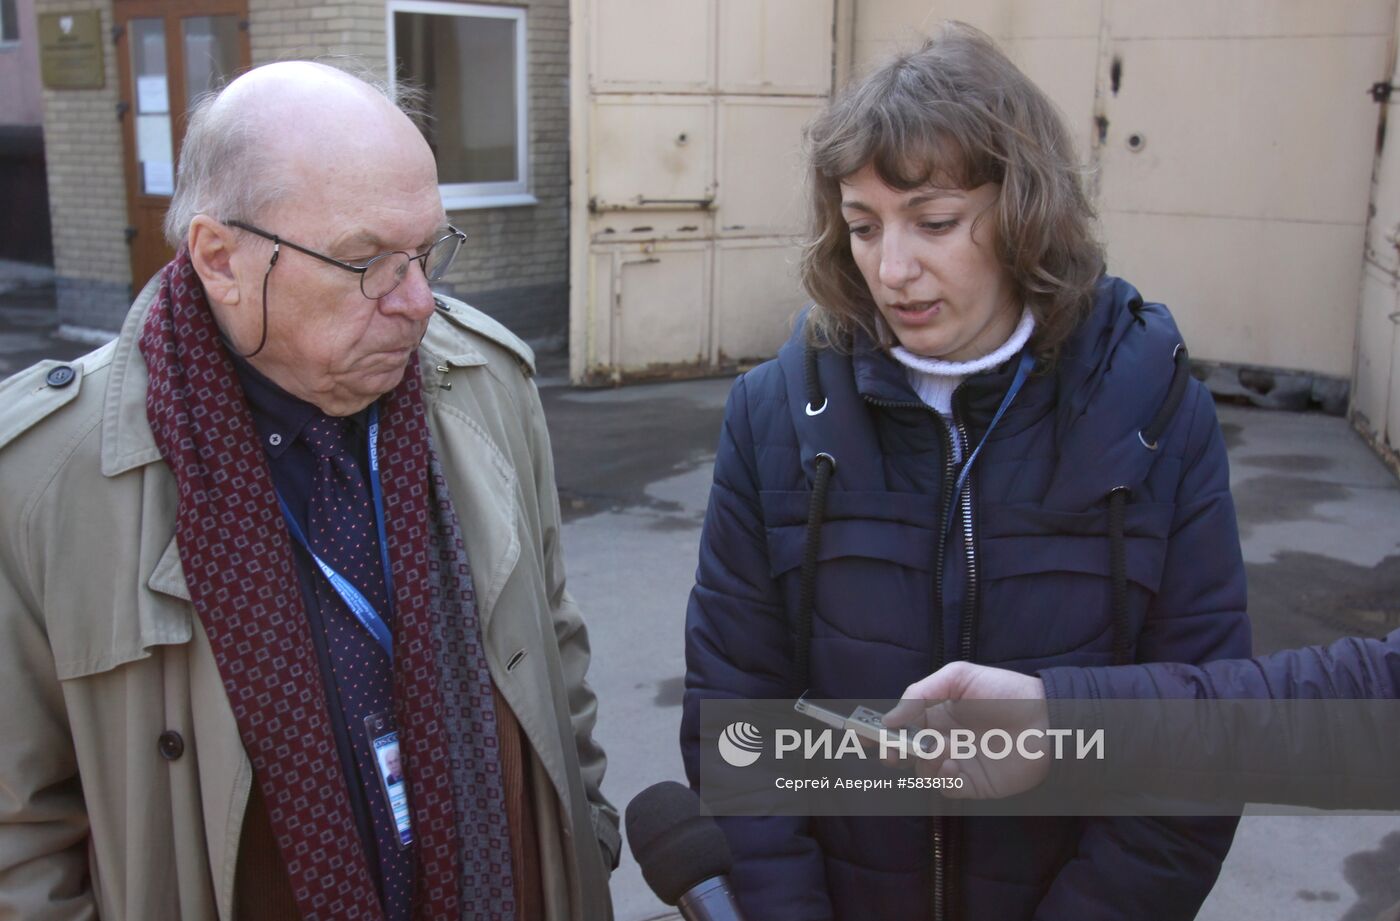 Представитель ОБСЕ Т. Фриш прибыл в Донецк